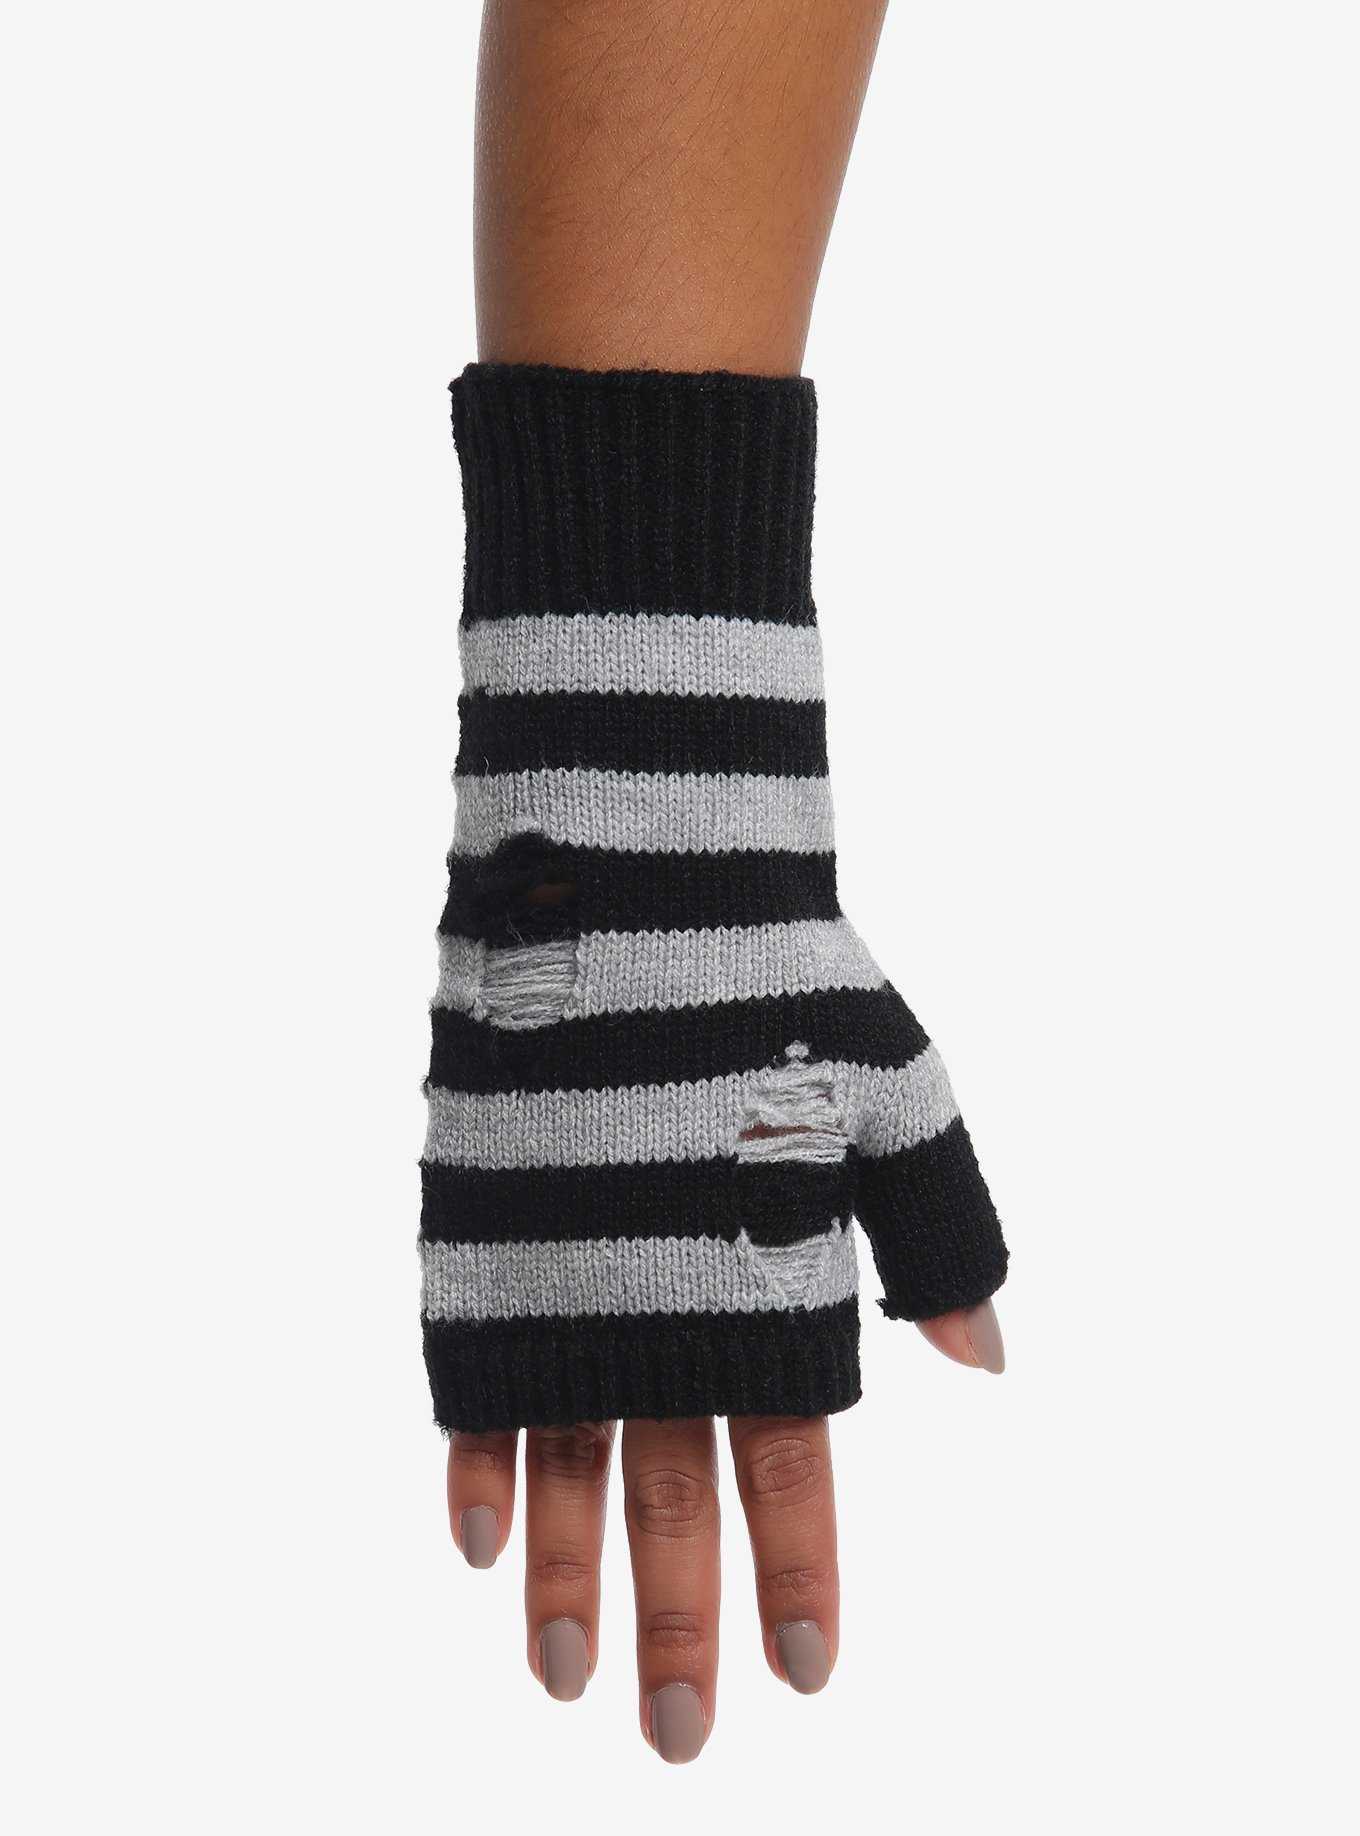 Short Fingerless Gloves Women, Short Gloves Blue Gloves Tardis